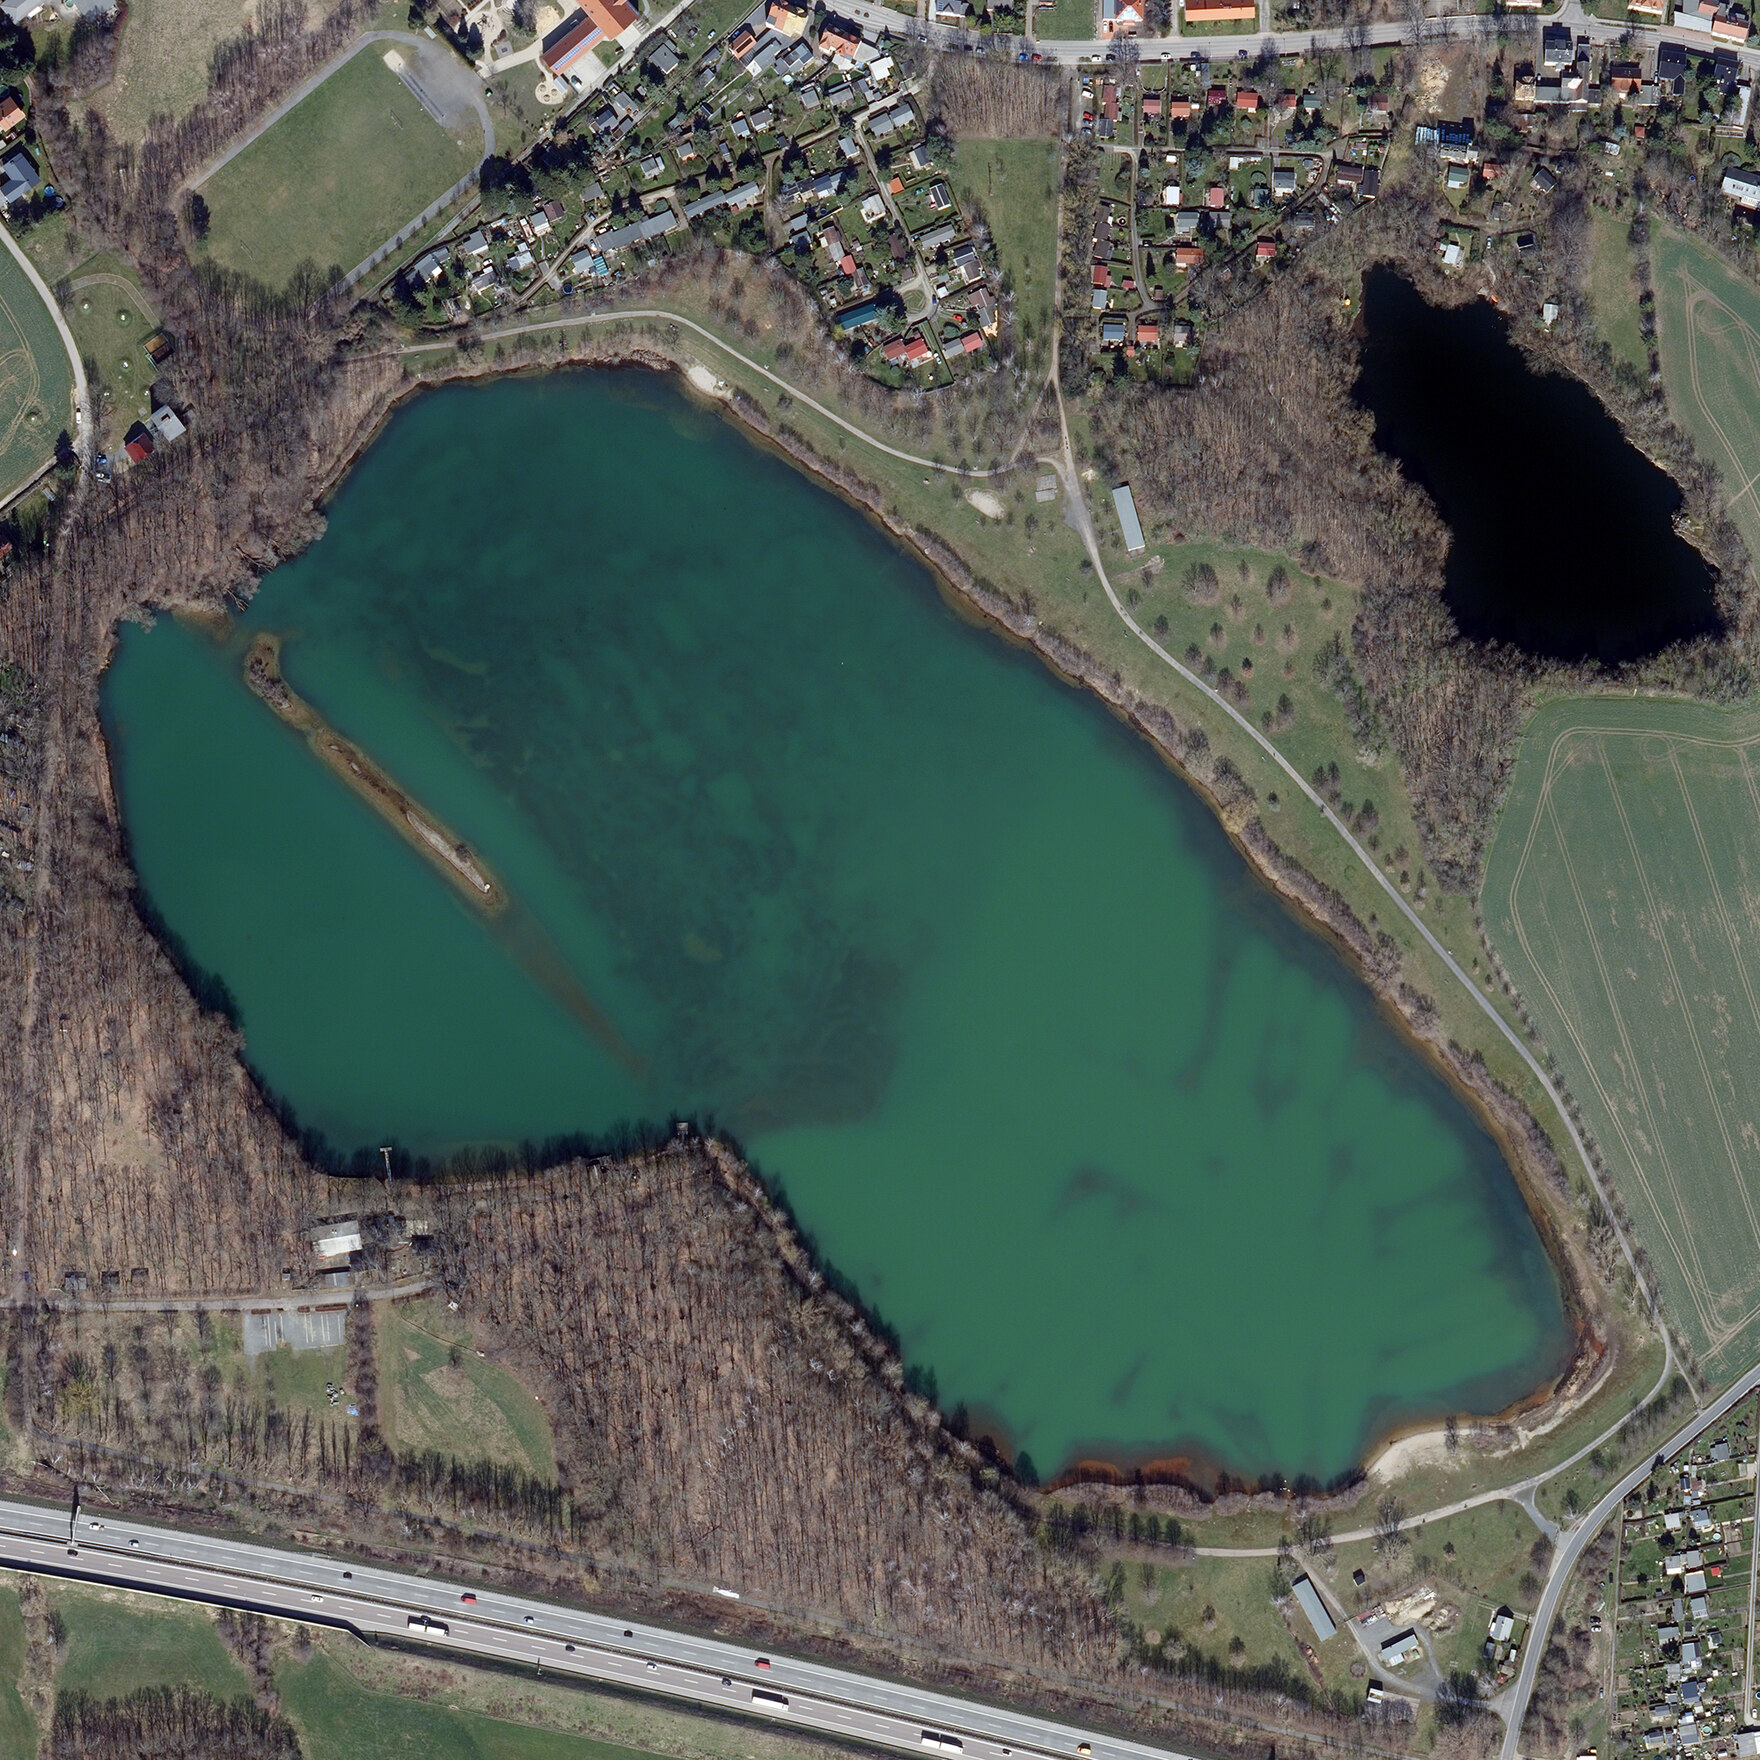 Luftbildaufnahme vom Albrechtshainer See bei Beucha, Landkreis Leipzig